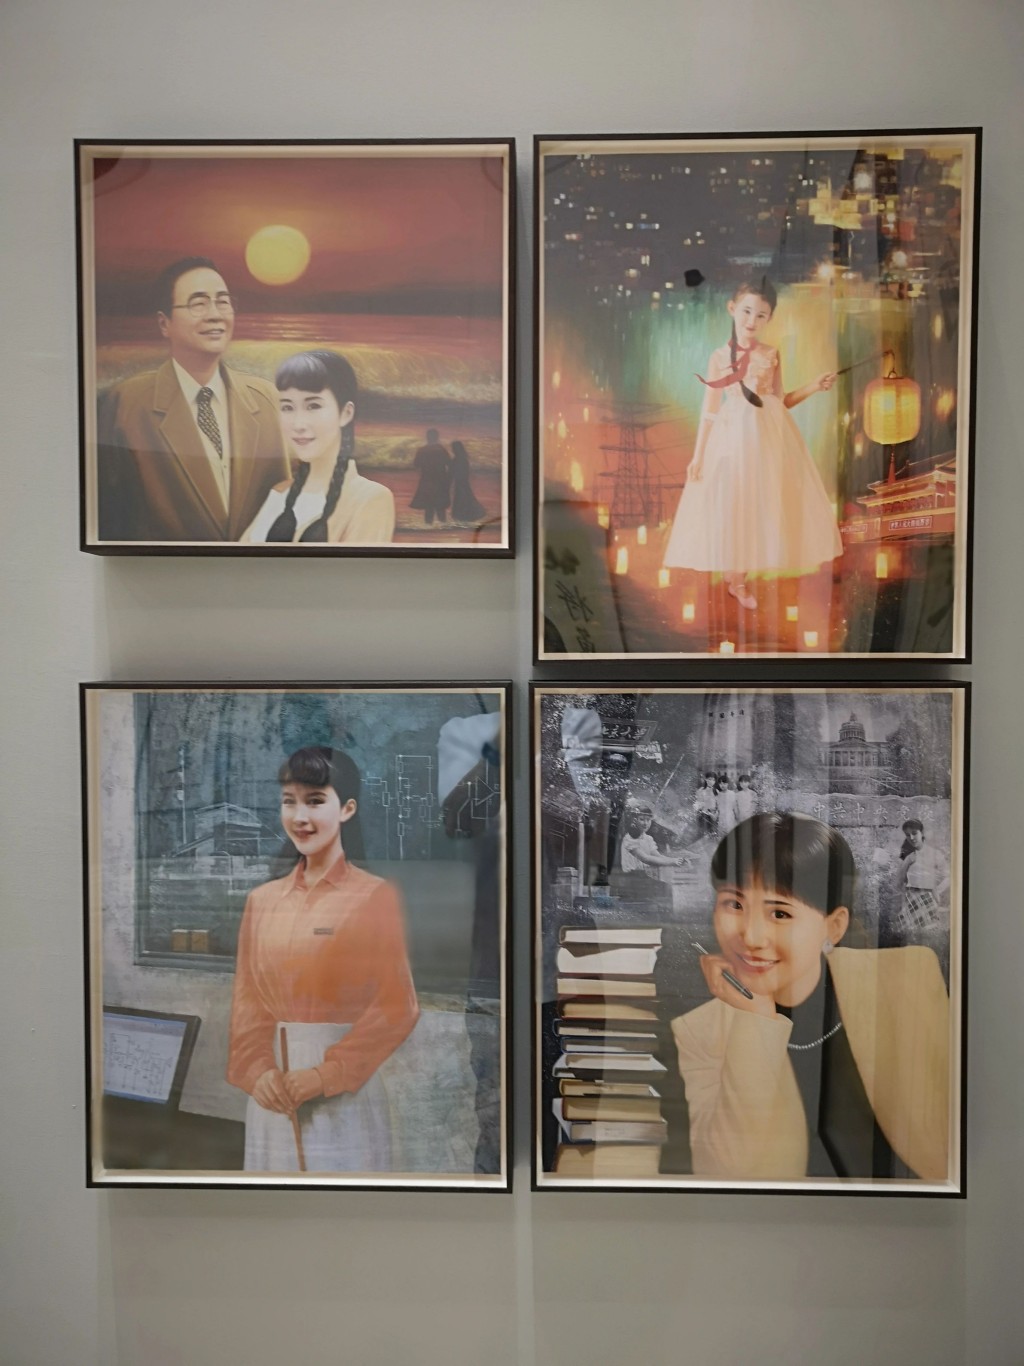 李小琳自畫像。左上的畫是她和父親李鵬在一起。